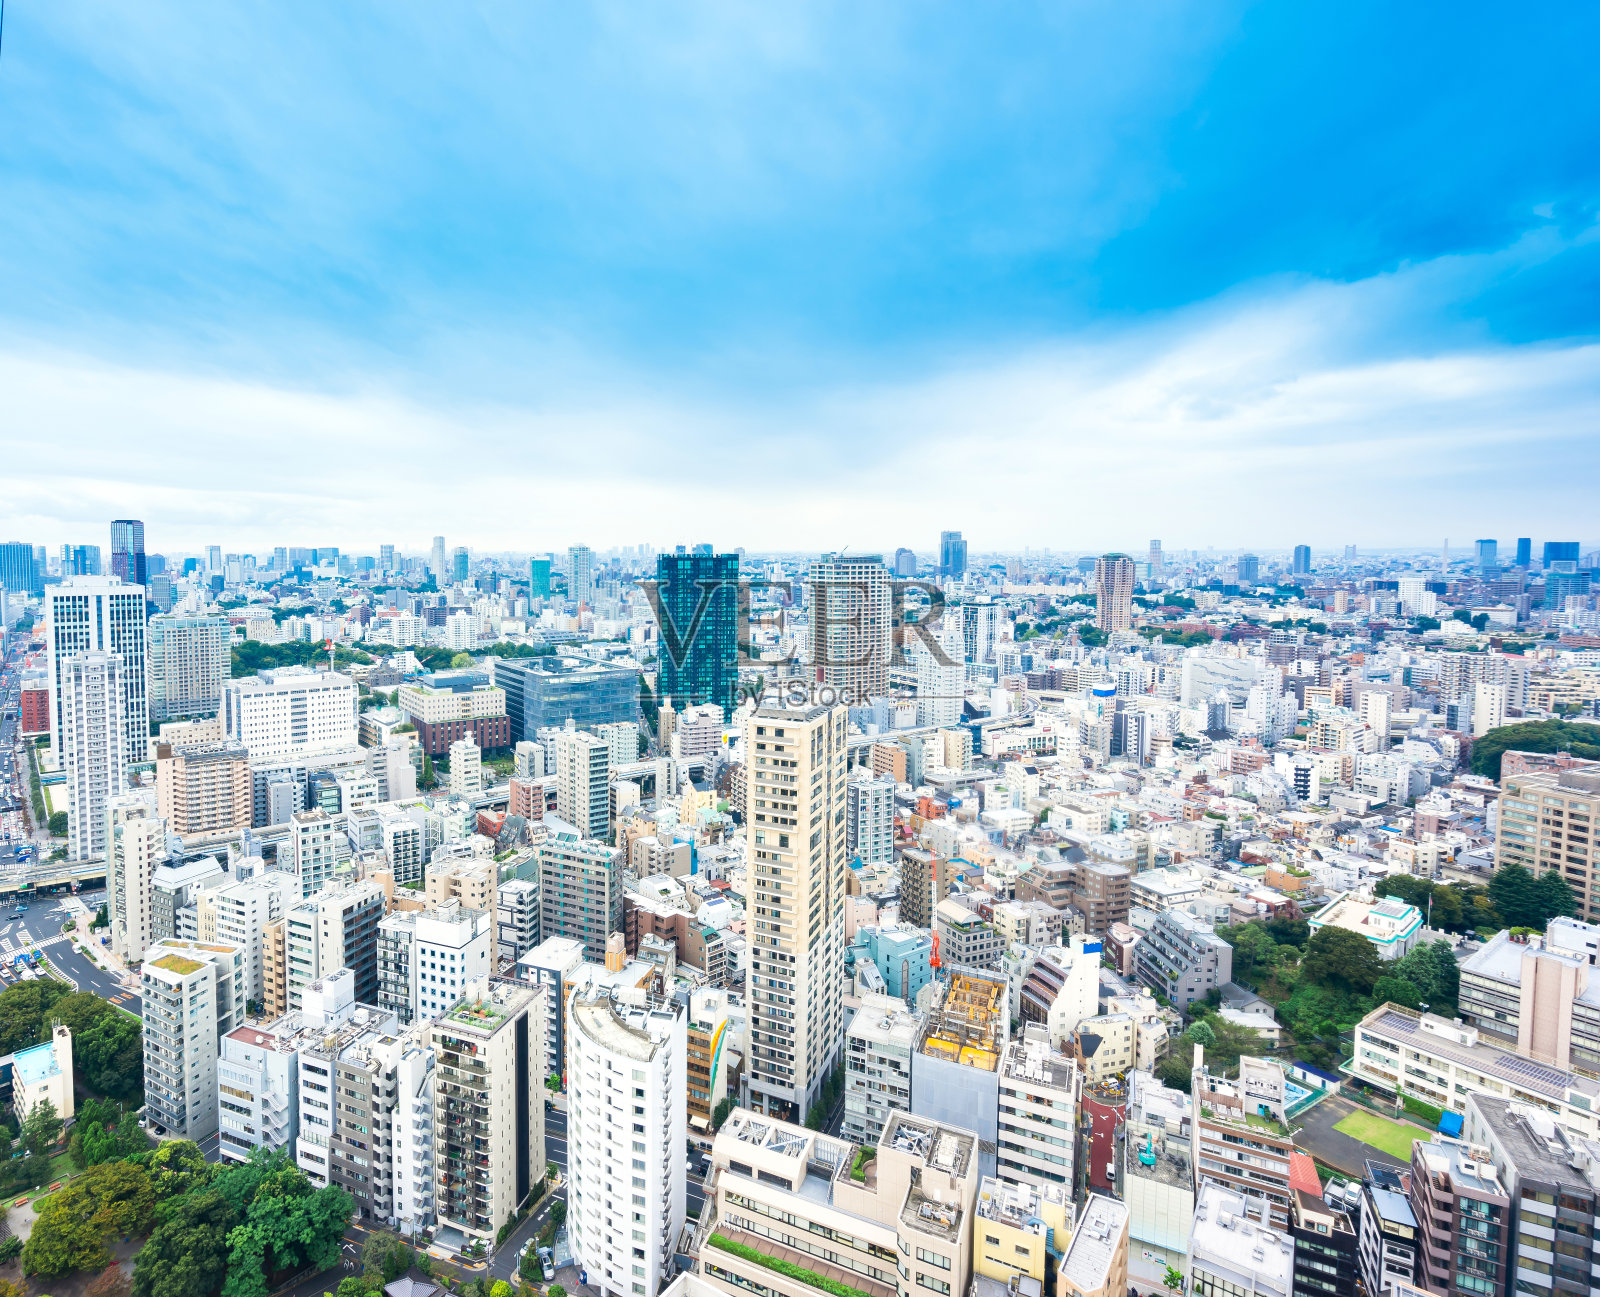 日本东京全景现代城市鸟瞰图照片摄影图片